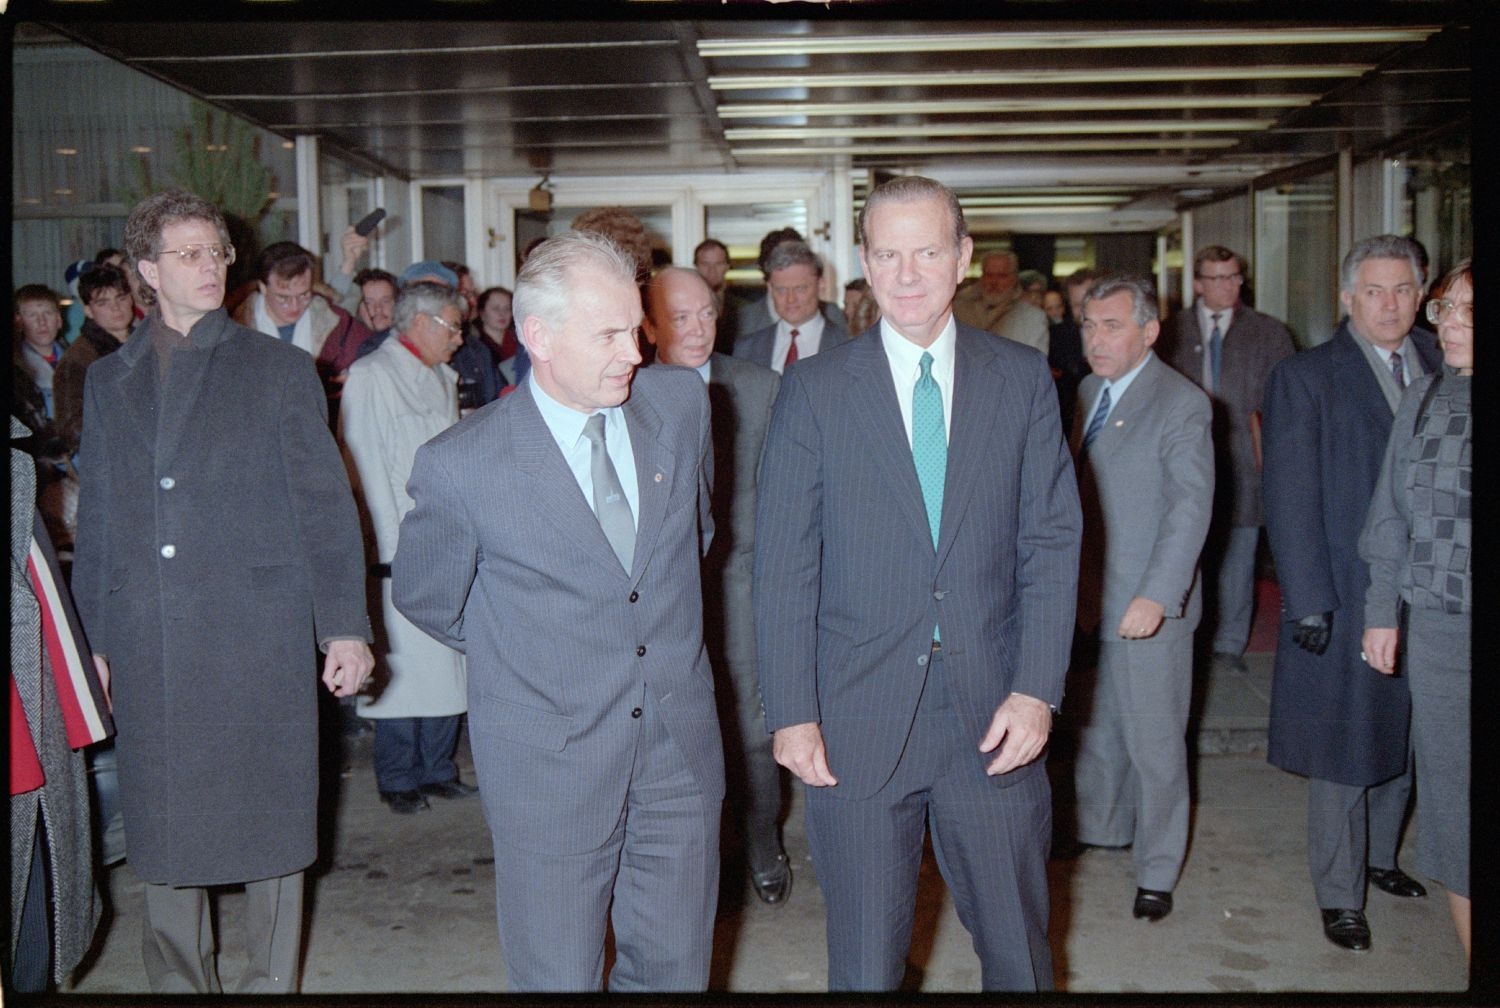 Fotografie: Besuch von US-Außenminister James Baker in West-Berlin (AlliiertenMuseum/U.S. Army Photograph Public Domain Mark)